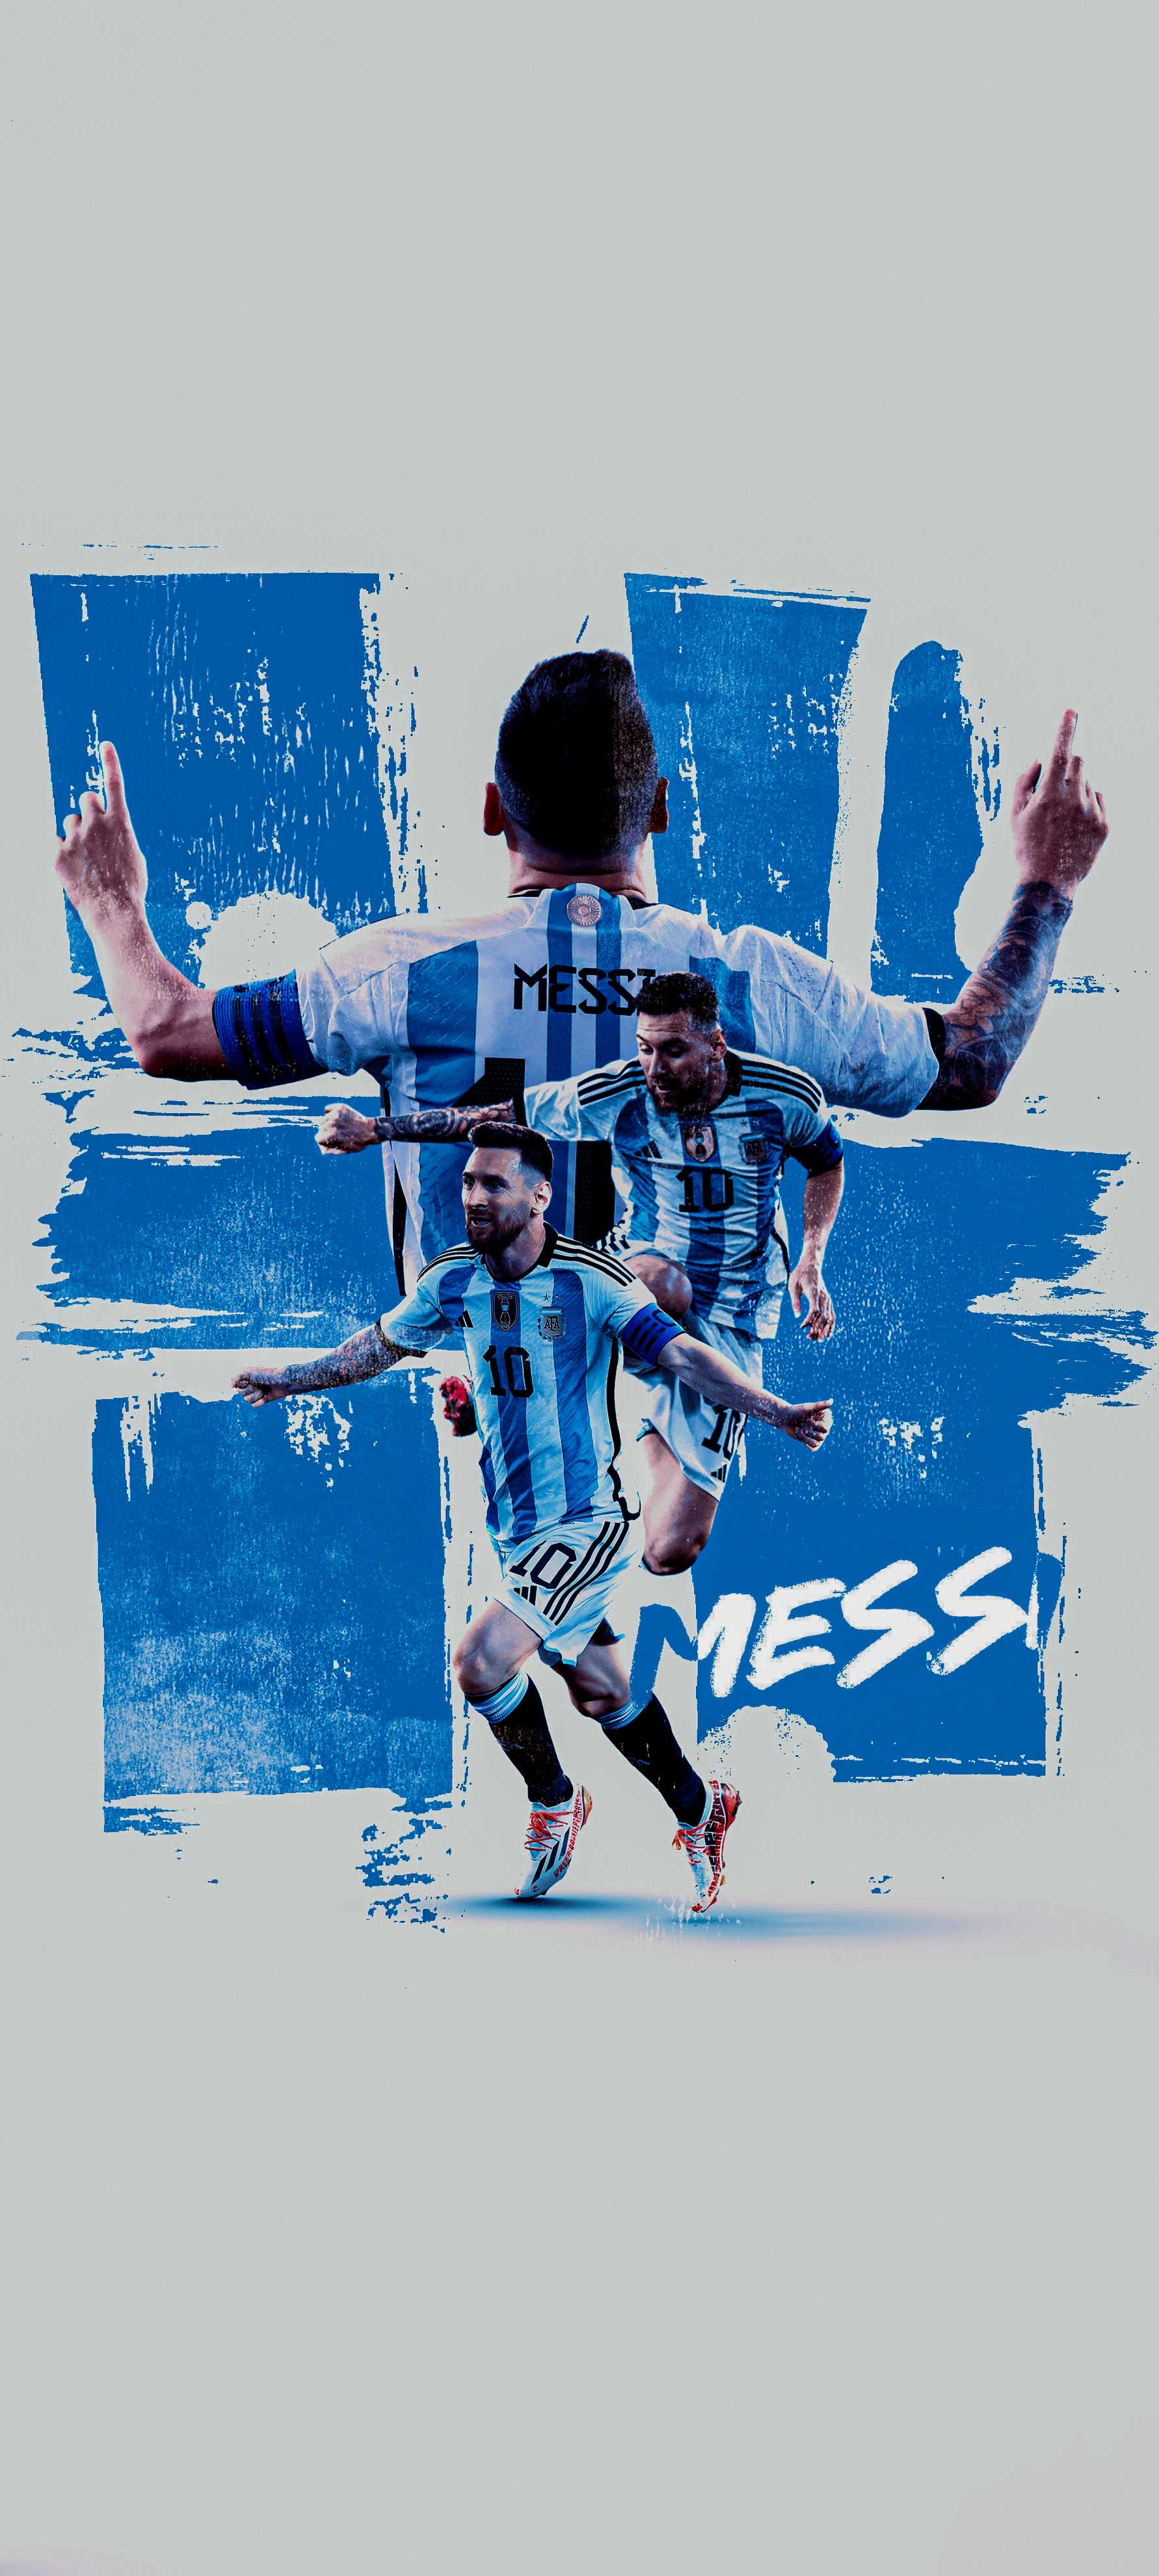 Là một fan của Messi, đừng bỏ lỡ cơ hội để có chiếc điện thoại độc đáo với hình nền trông thật chuyên nghiệp. Tham gia vào bầu không khí của World Cup Qatar bằng cách trang trí chiếc iPhone của bạn với hình nền Messi World Cup Qatar. Nhấp chuột để truy cập vào các hình nền Messi World Cup Qatar đáng chú ý nhất.